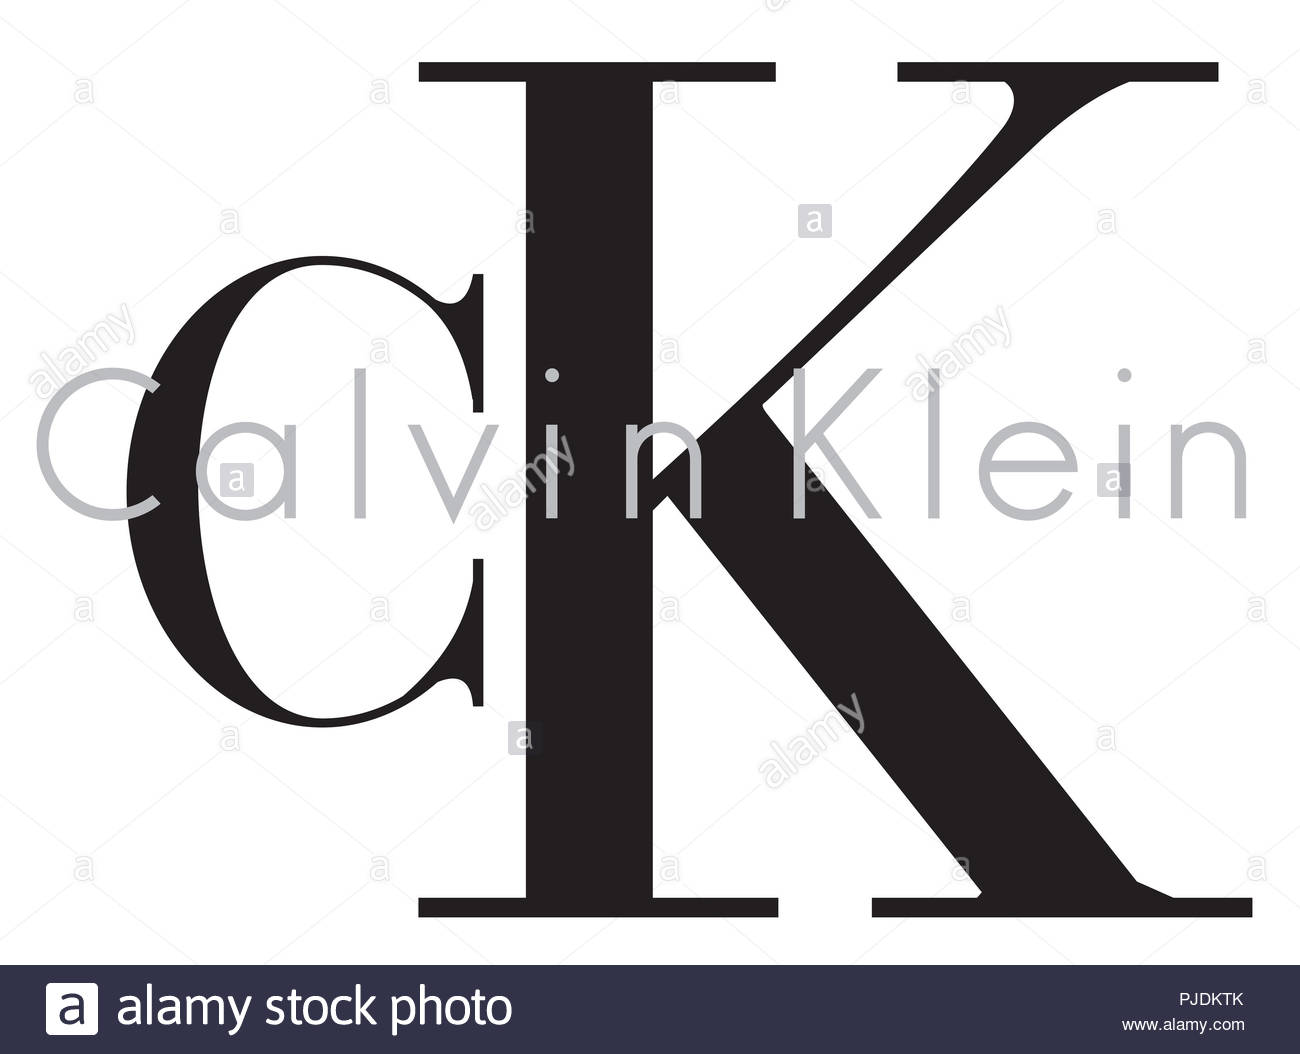 Calvin Klein Logo Stock Photos & Calvin Klein Logo Stock Images - Alamy